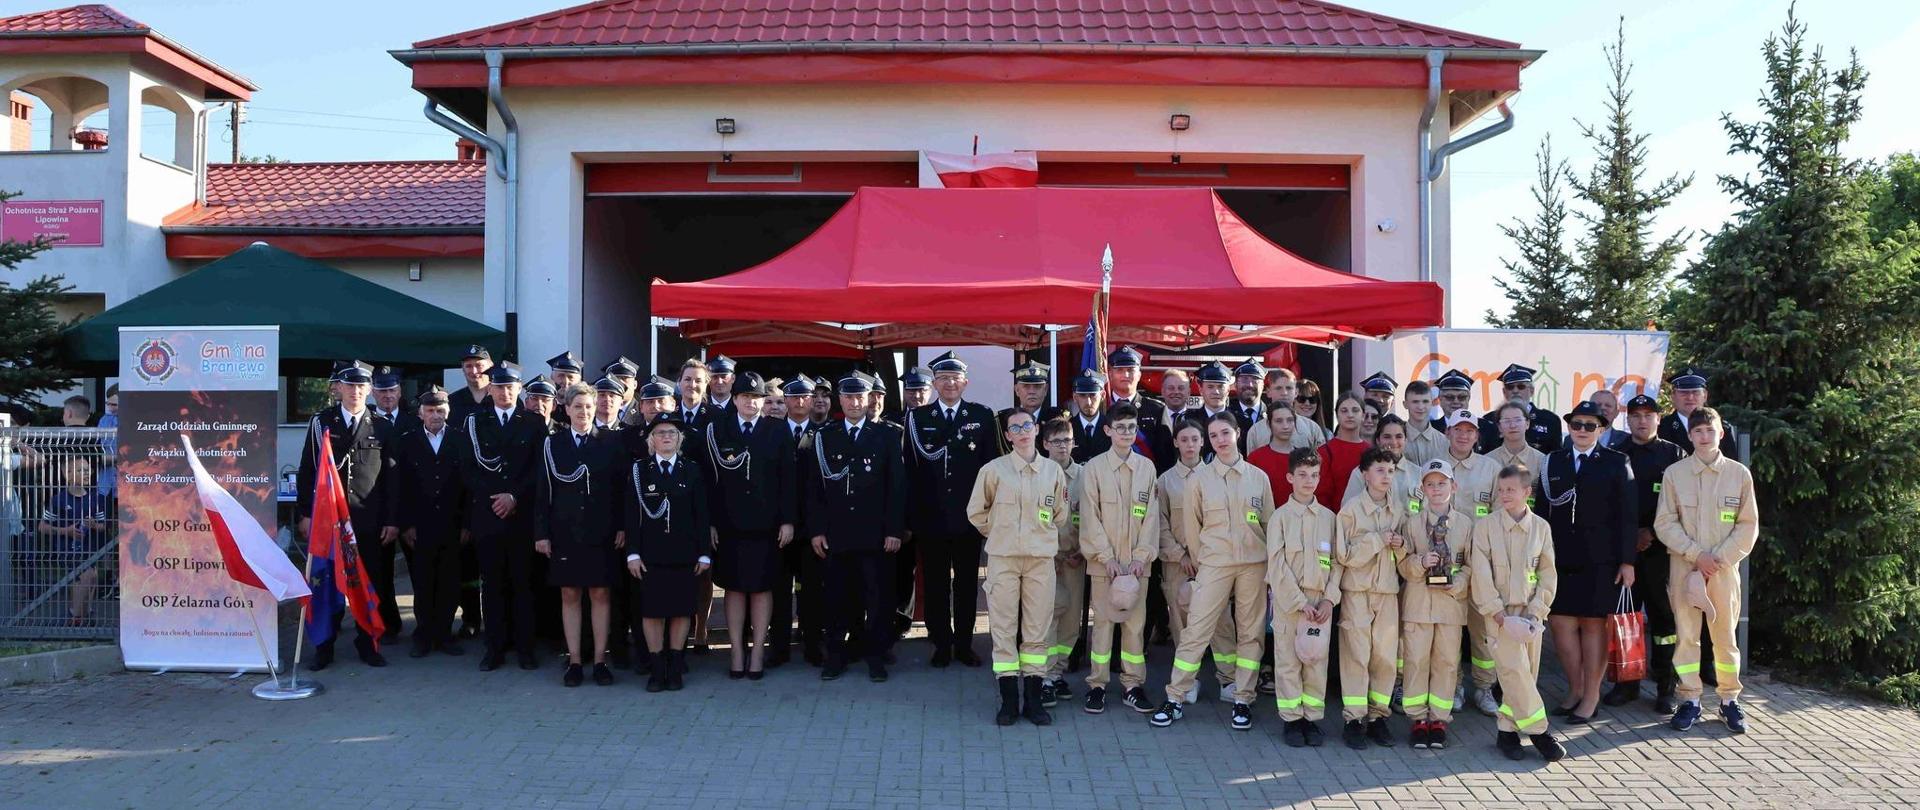 Na tle strażnicy OSP stoją strażacy w mundurach galowych oraz dzieci w jasnych mundurkach.